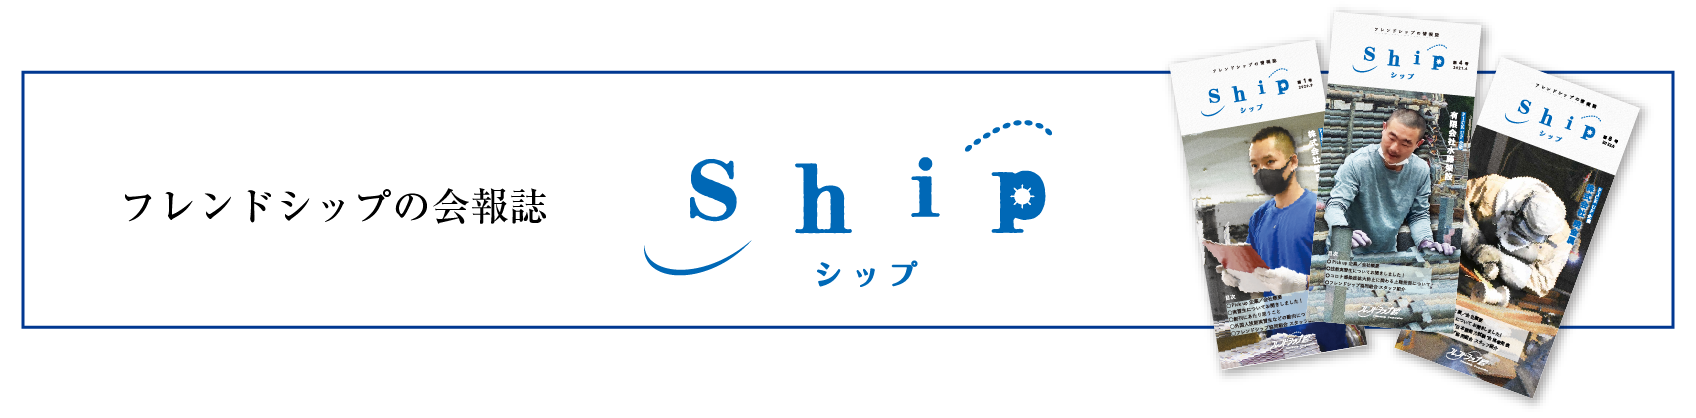 ship_logo_yoko